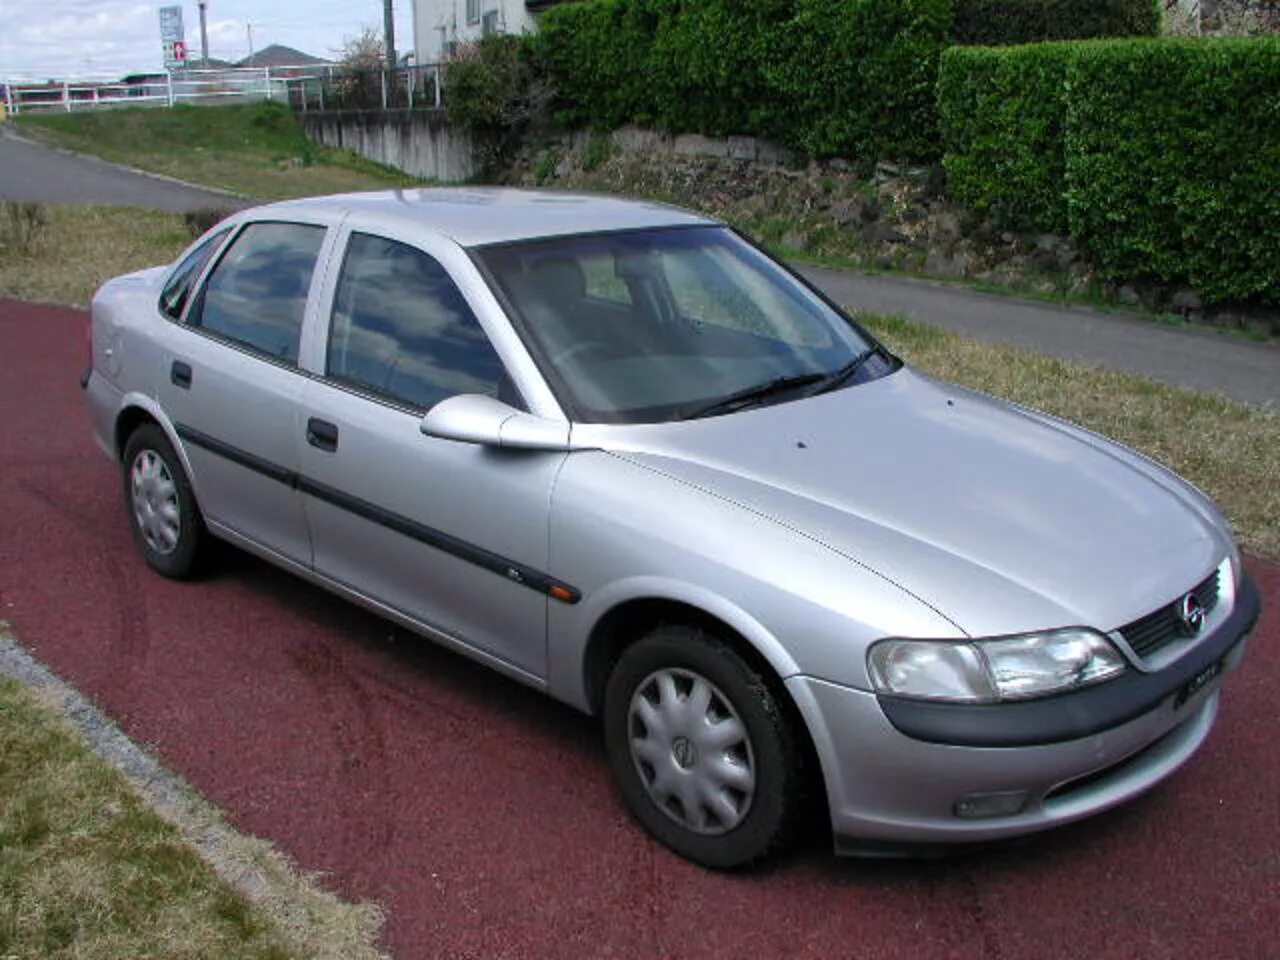 Вектра 98 года. Opel Vectra 1997. Опель Вектра 1997. Опель Вектра 1997 седан. Опель Вектра 1997 года.